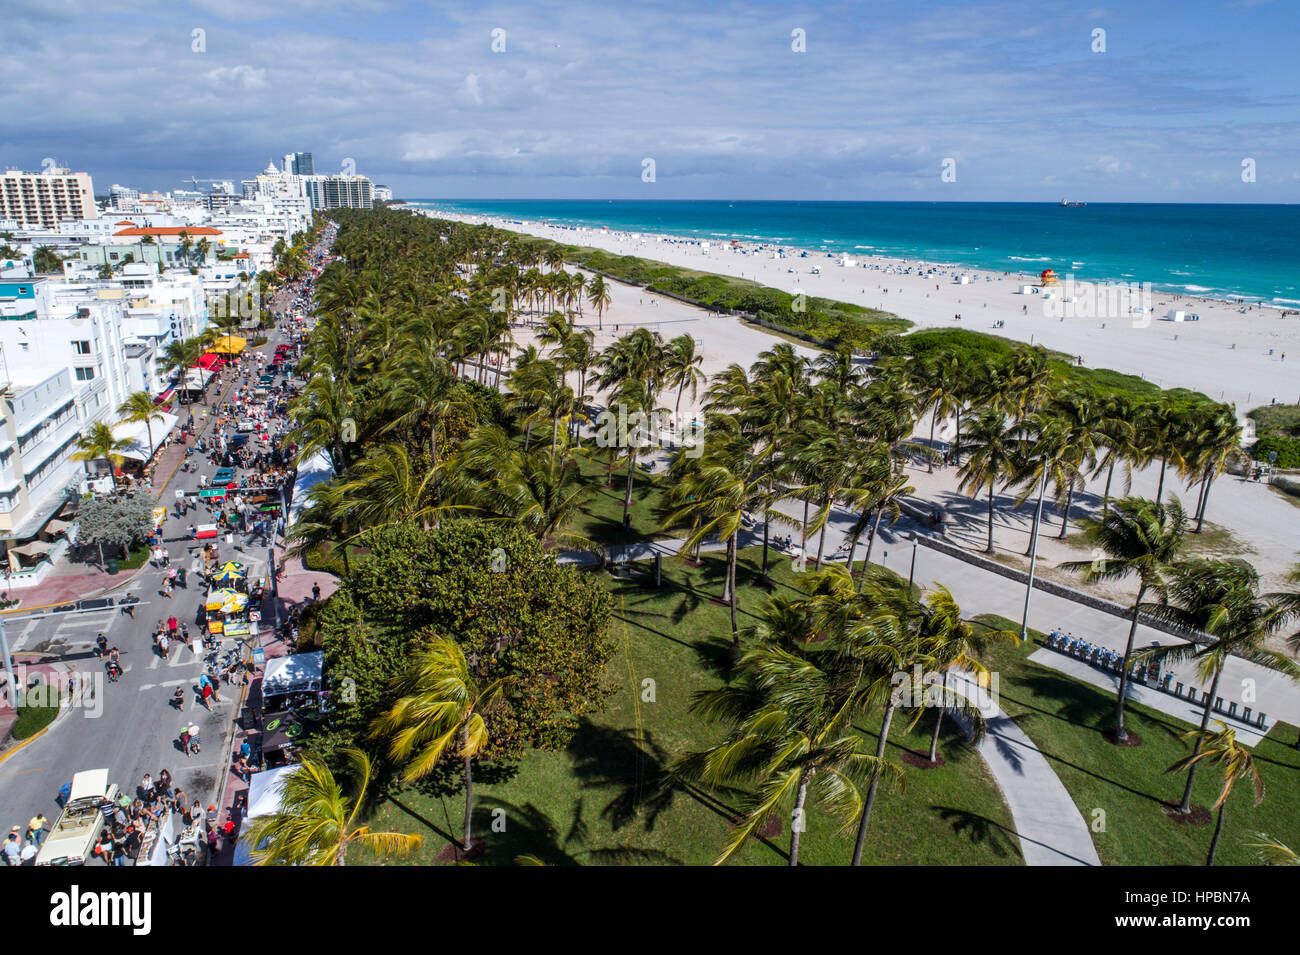 Miami Beach Florida,Ocean Drive,week-end art déco,festival,Lummus Park,Océan Atlantique,hôtels,aérien depuis la vue ci-dessus,plage publique,eau,FL17011 Banque D'Images